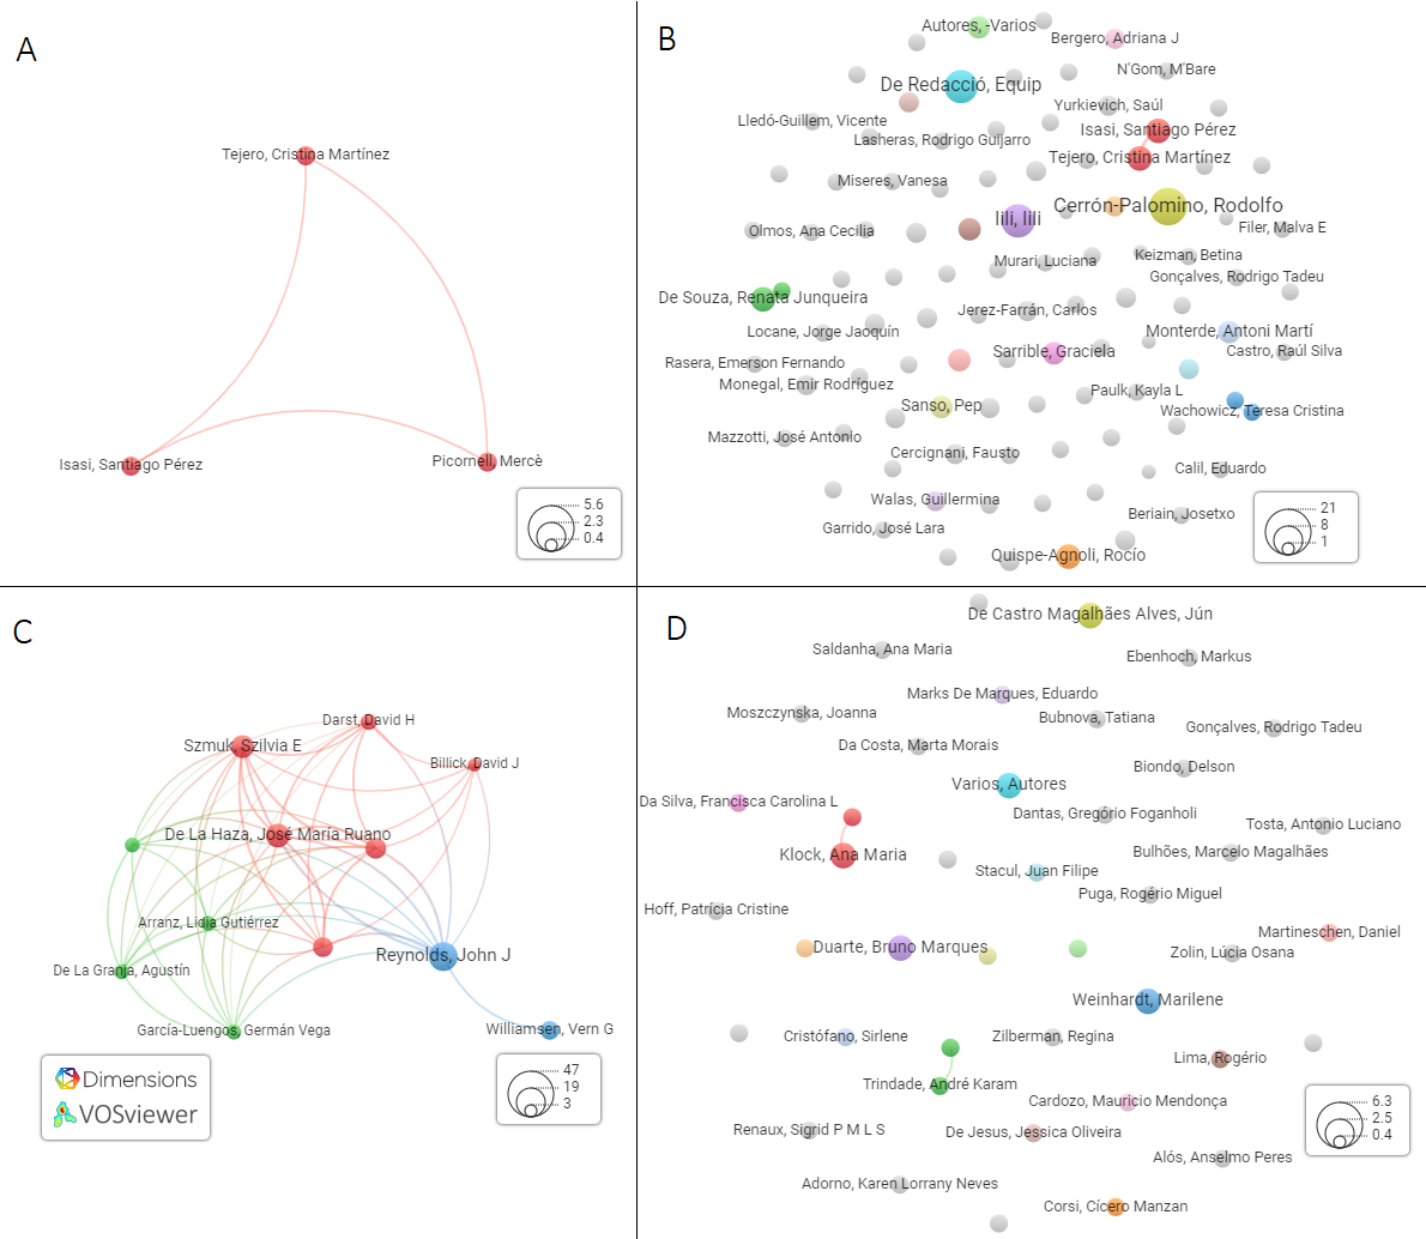 Figure 2: Authors network for terms: A “história contrafactual”, B “história alternativa”, C “romance histórico” and D “metaficcção científica”.